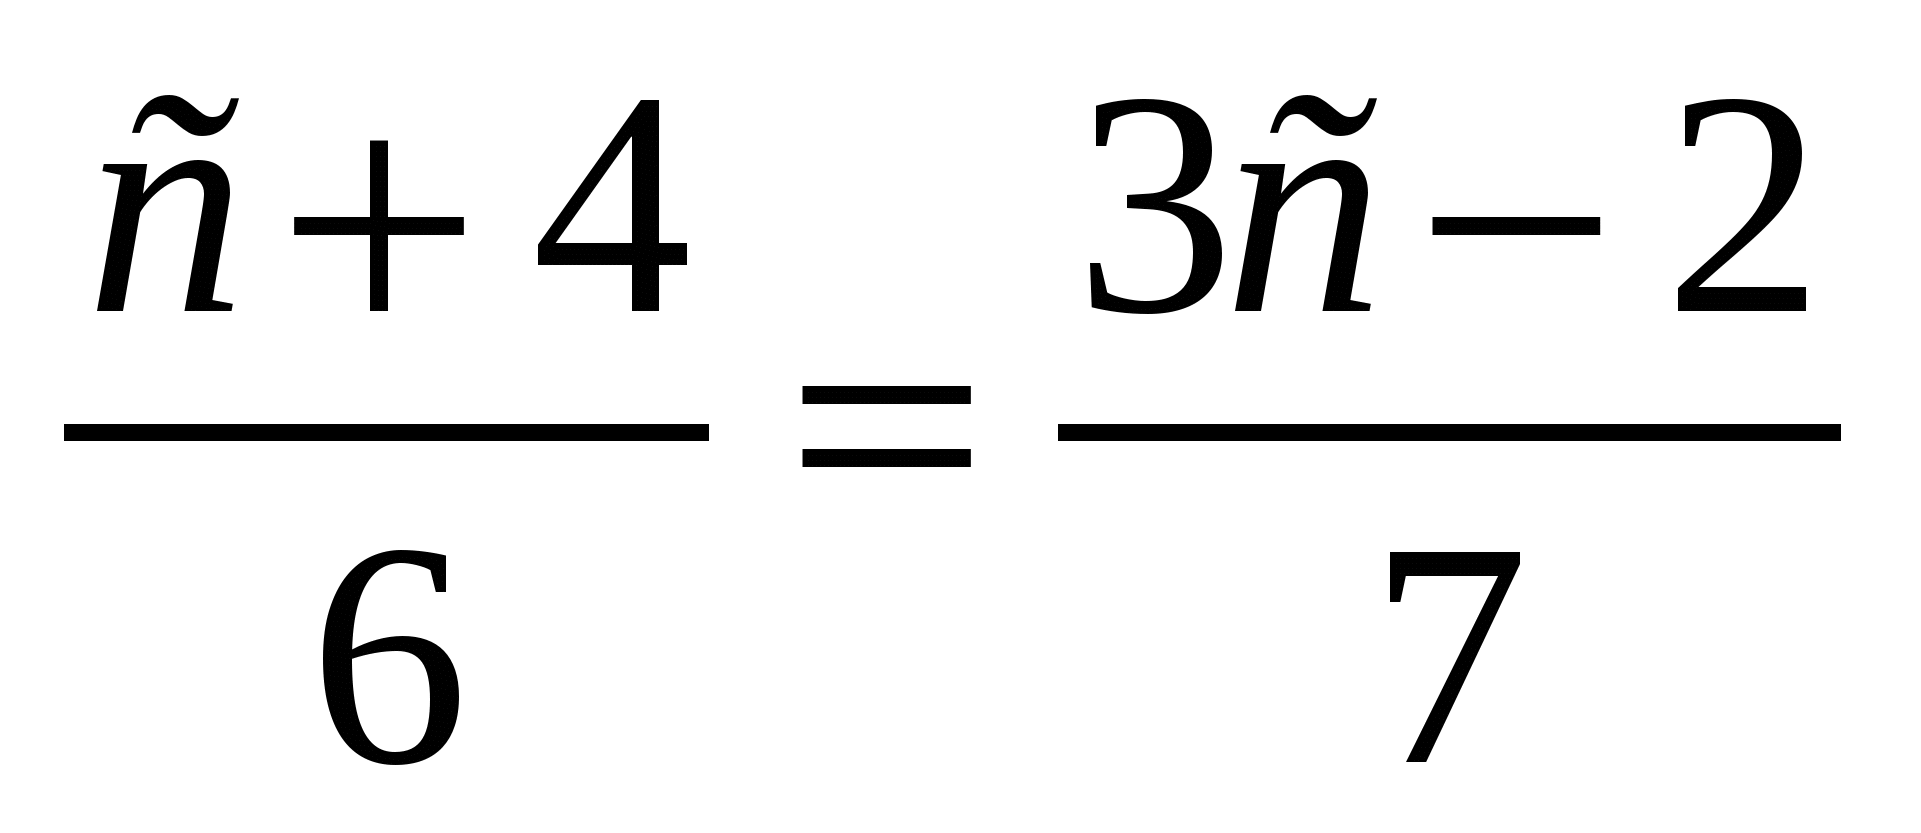 Контрольная работа no 13 решение уравнений